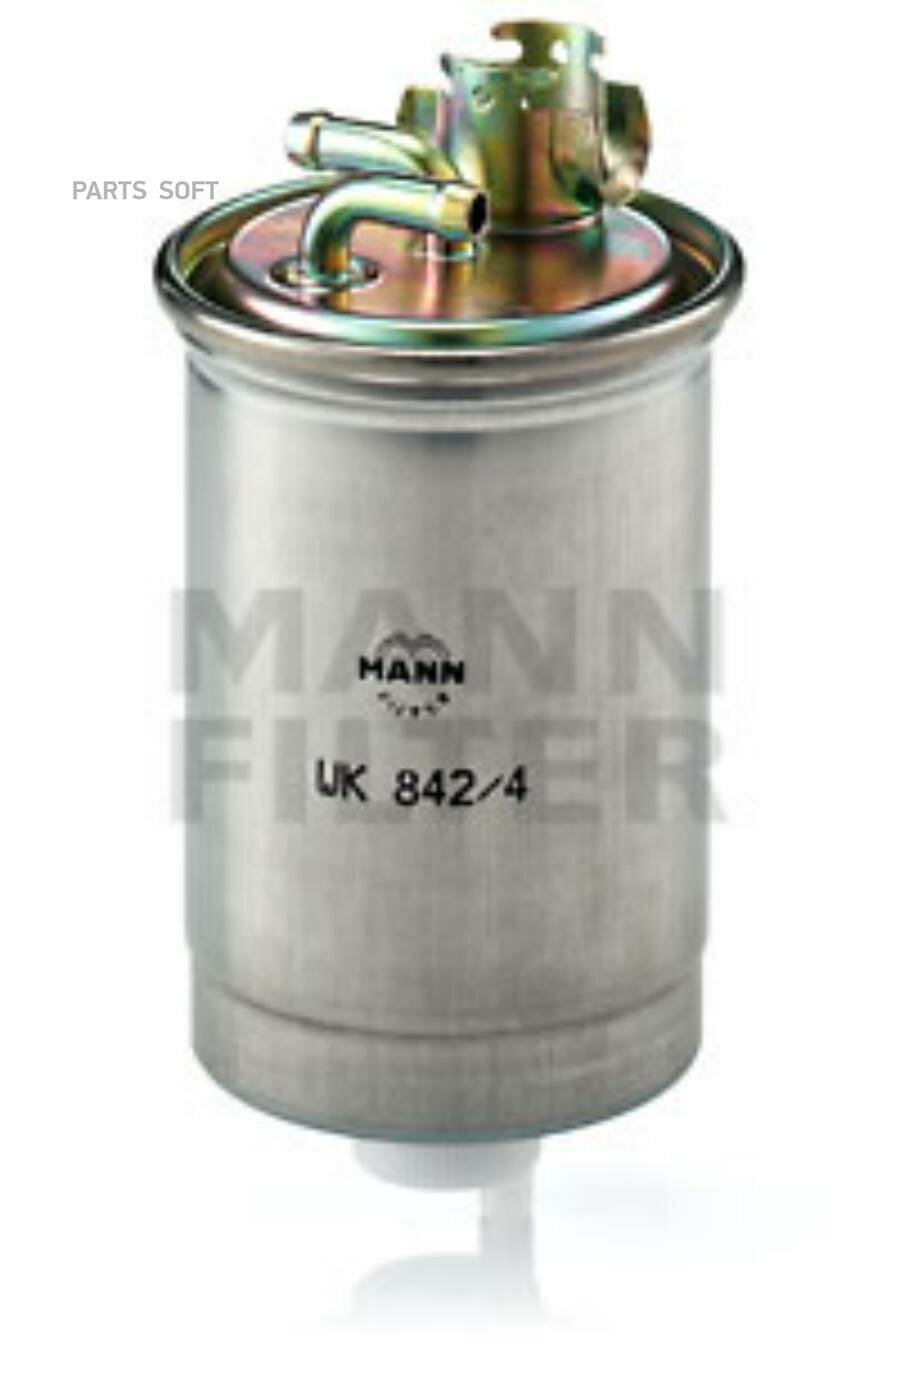 Фильтр топливный WK842/4 MANN-FILTER WK842/4 | цена за 1 шт